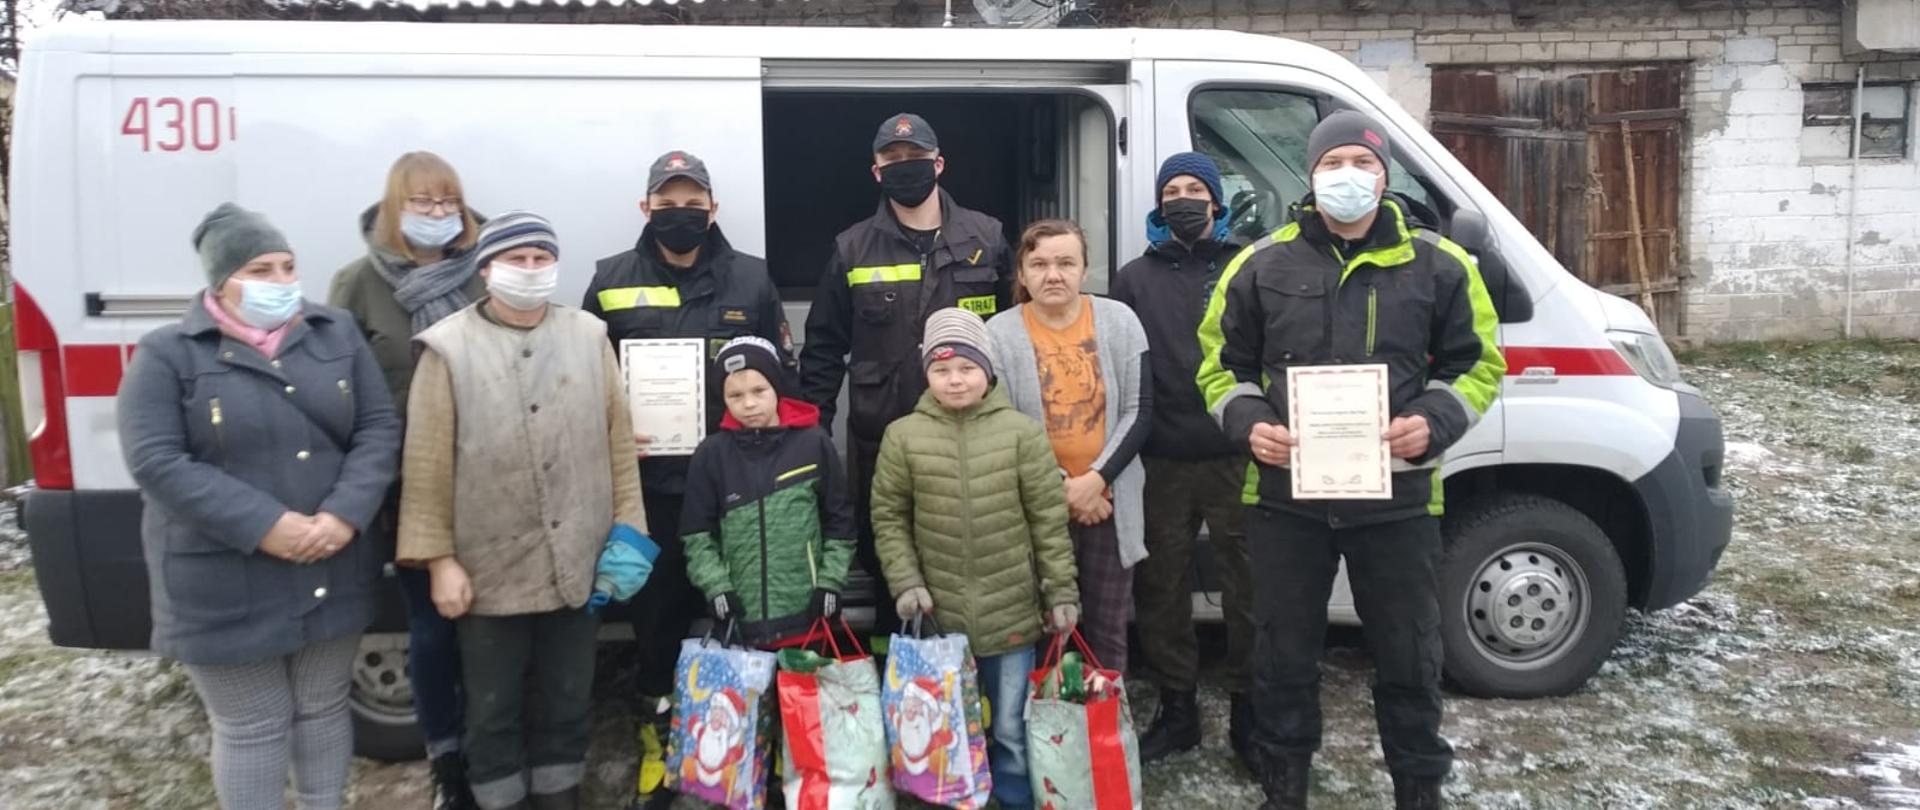 strażacy zorganizowali paczkę dla rodziny z powiatu koneckiego